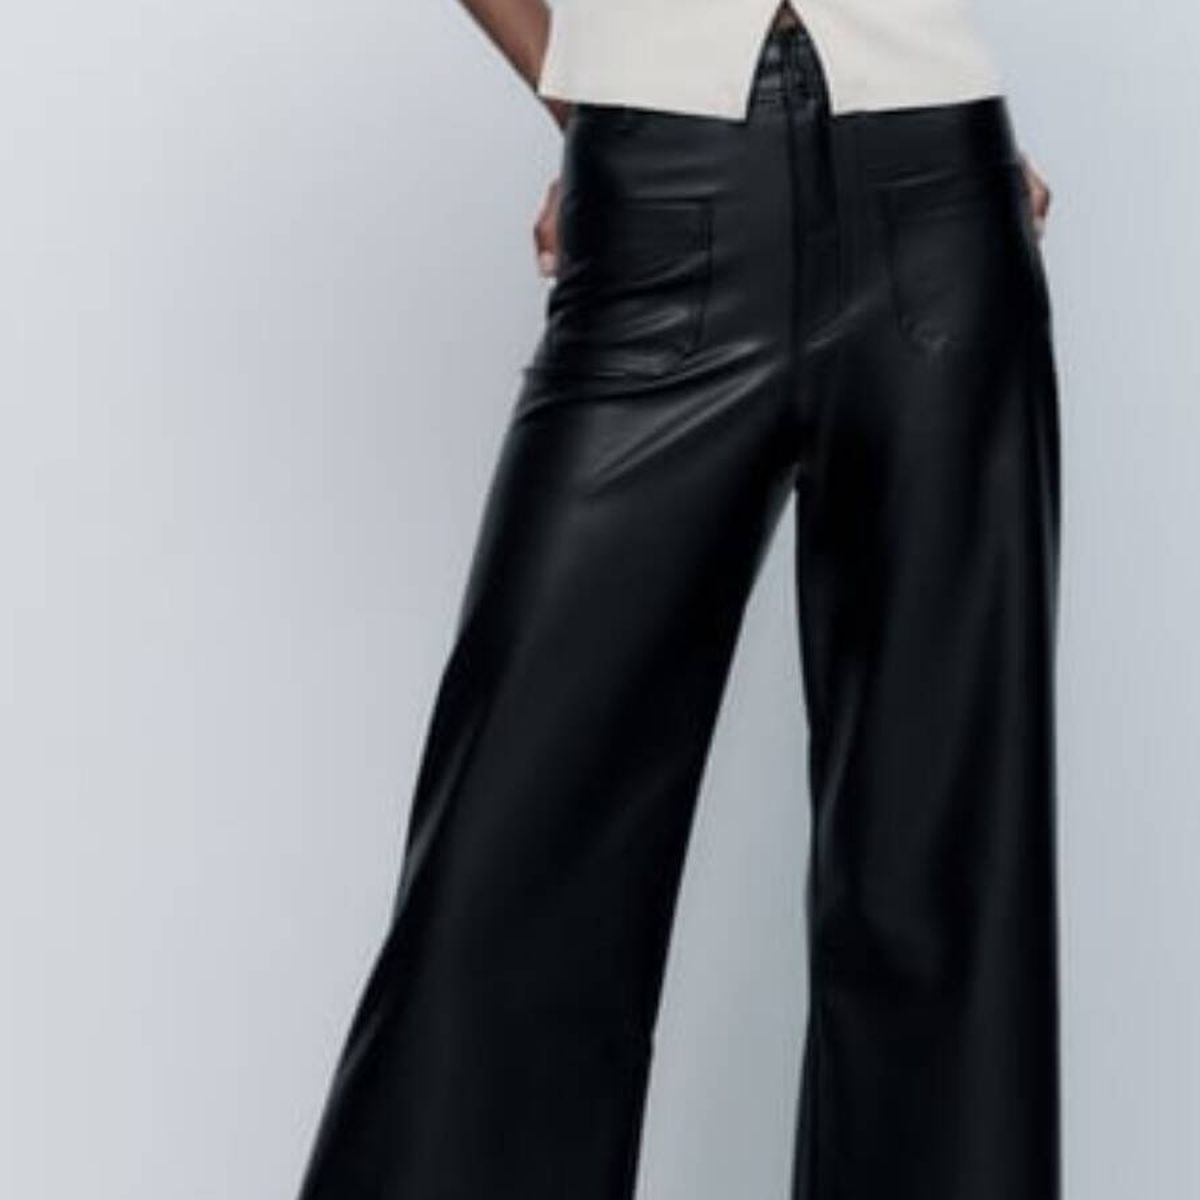 Amor primera vista por este pantalón de Zara a un precio low cost